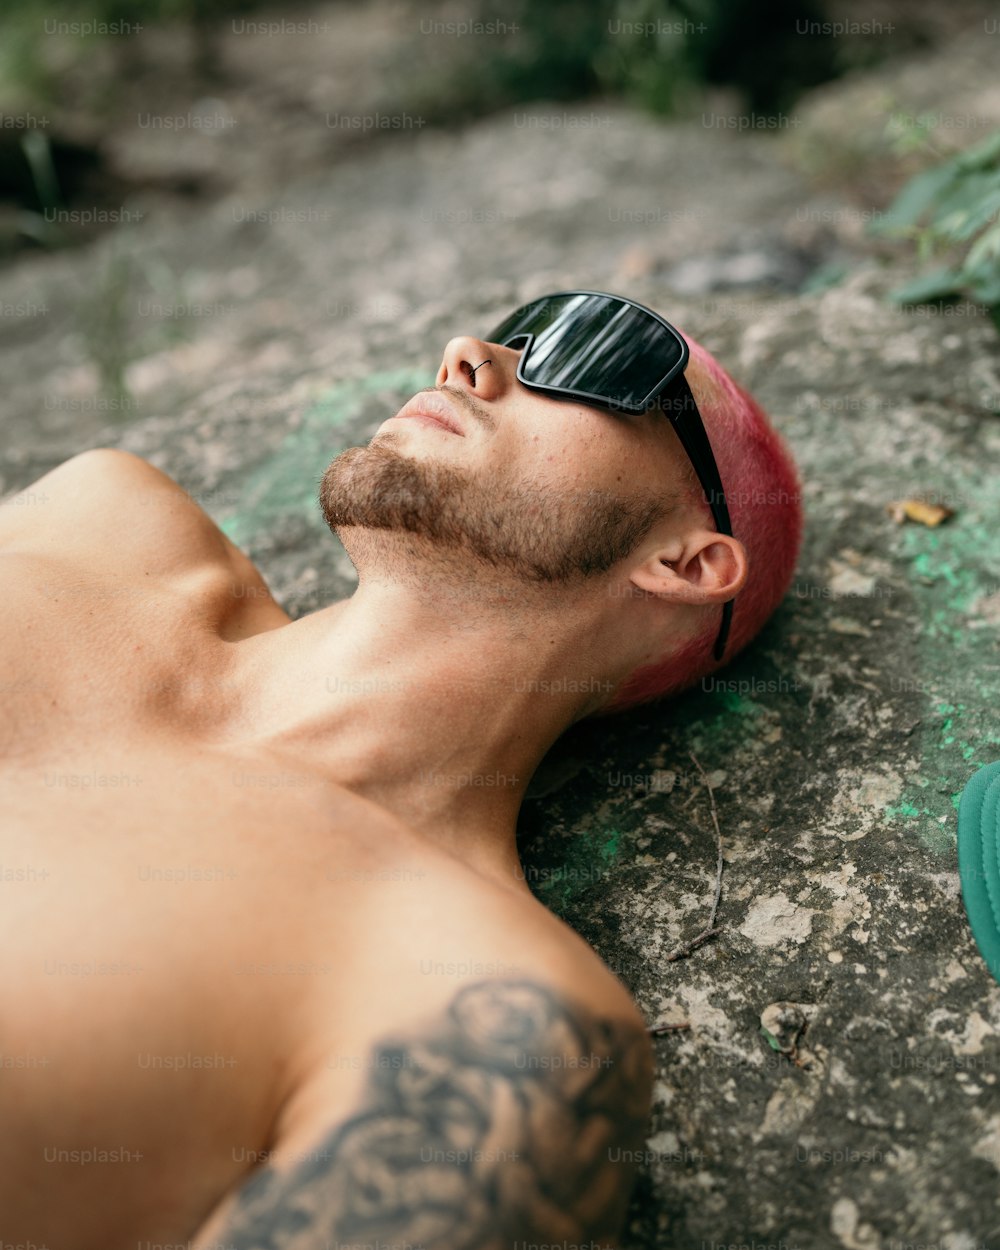 Un homme torse nu allongé sur le sol portant des lunettes de soleil